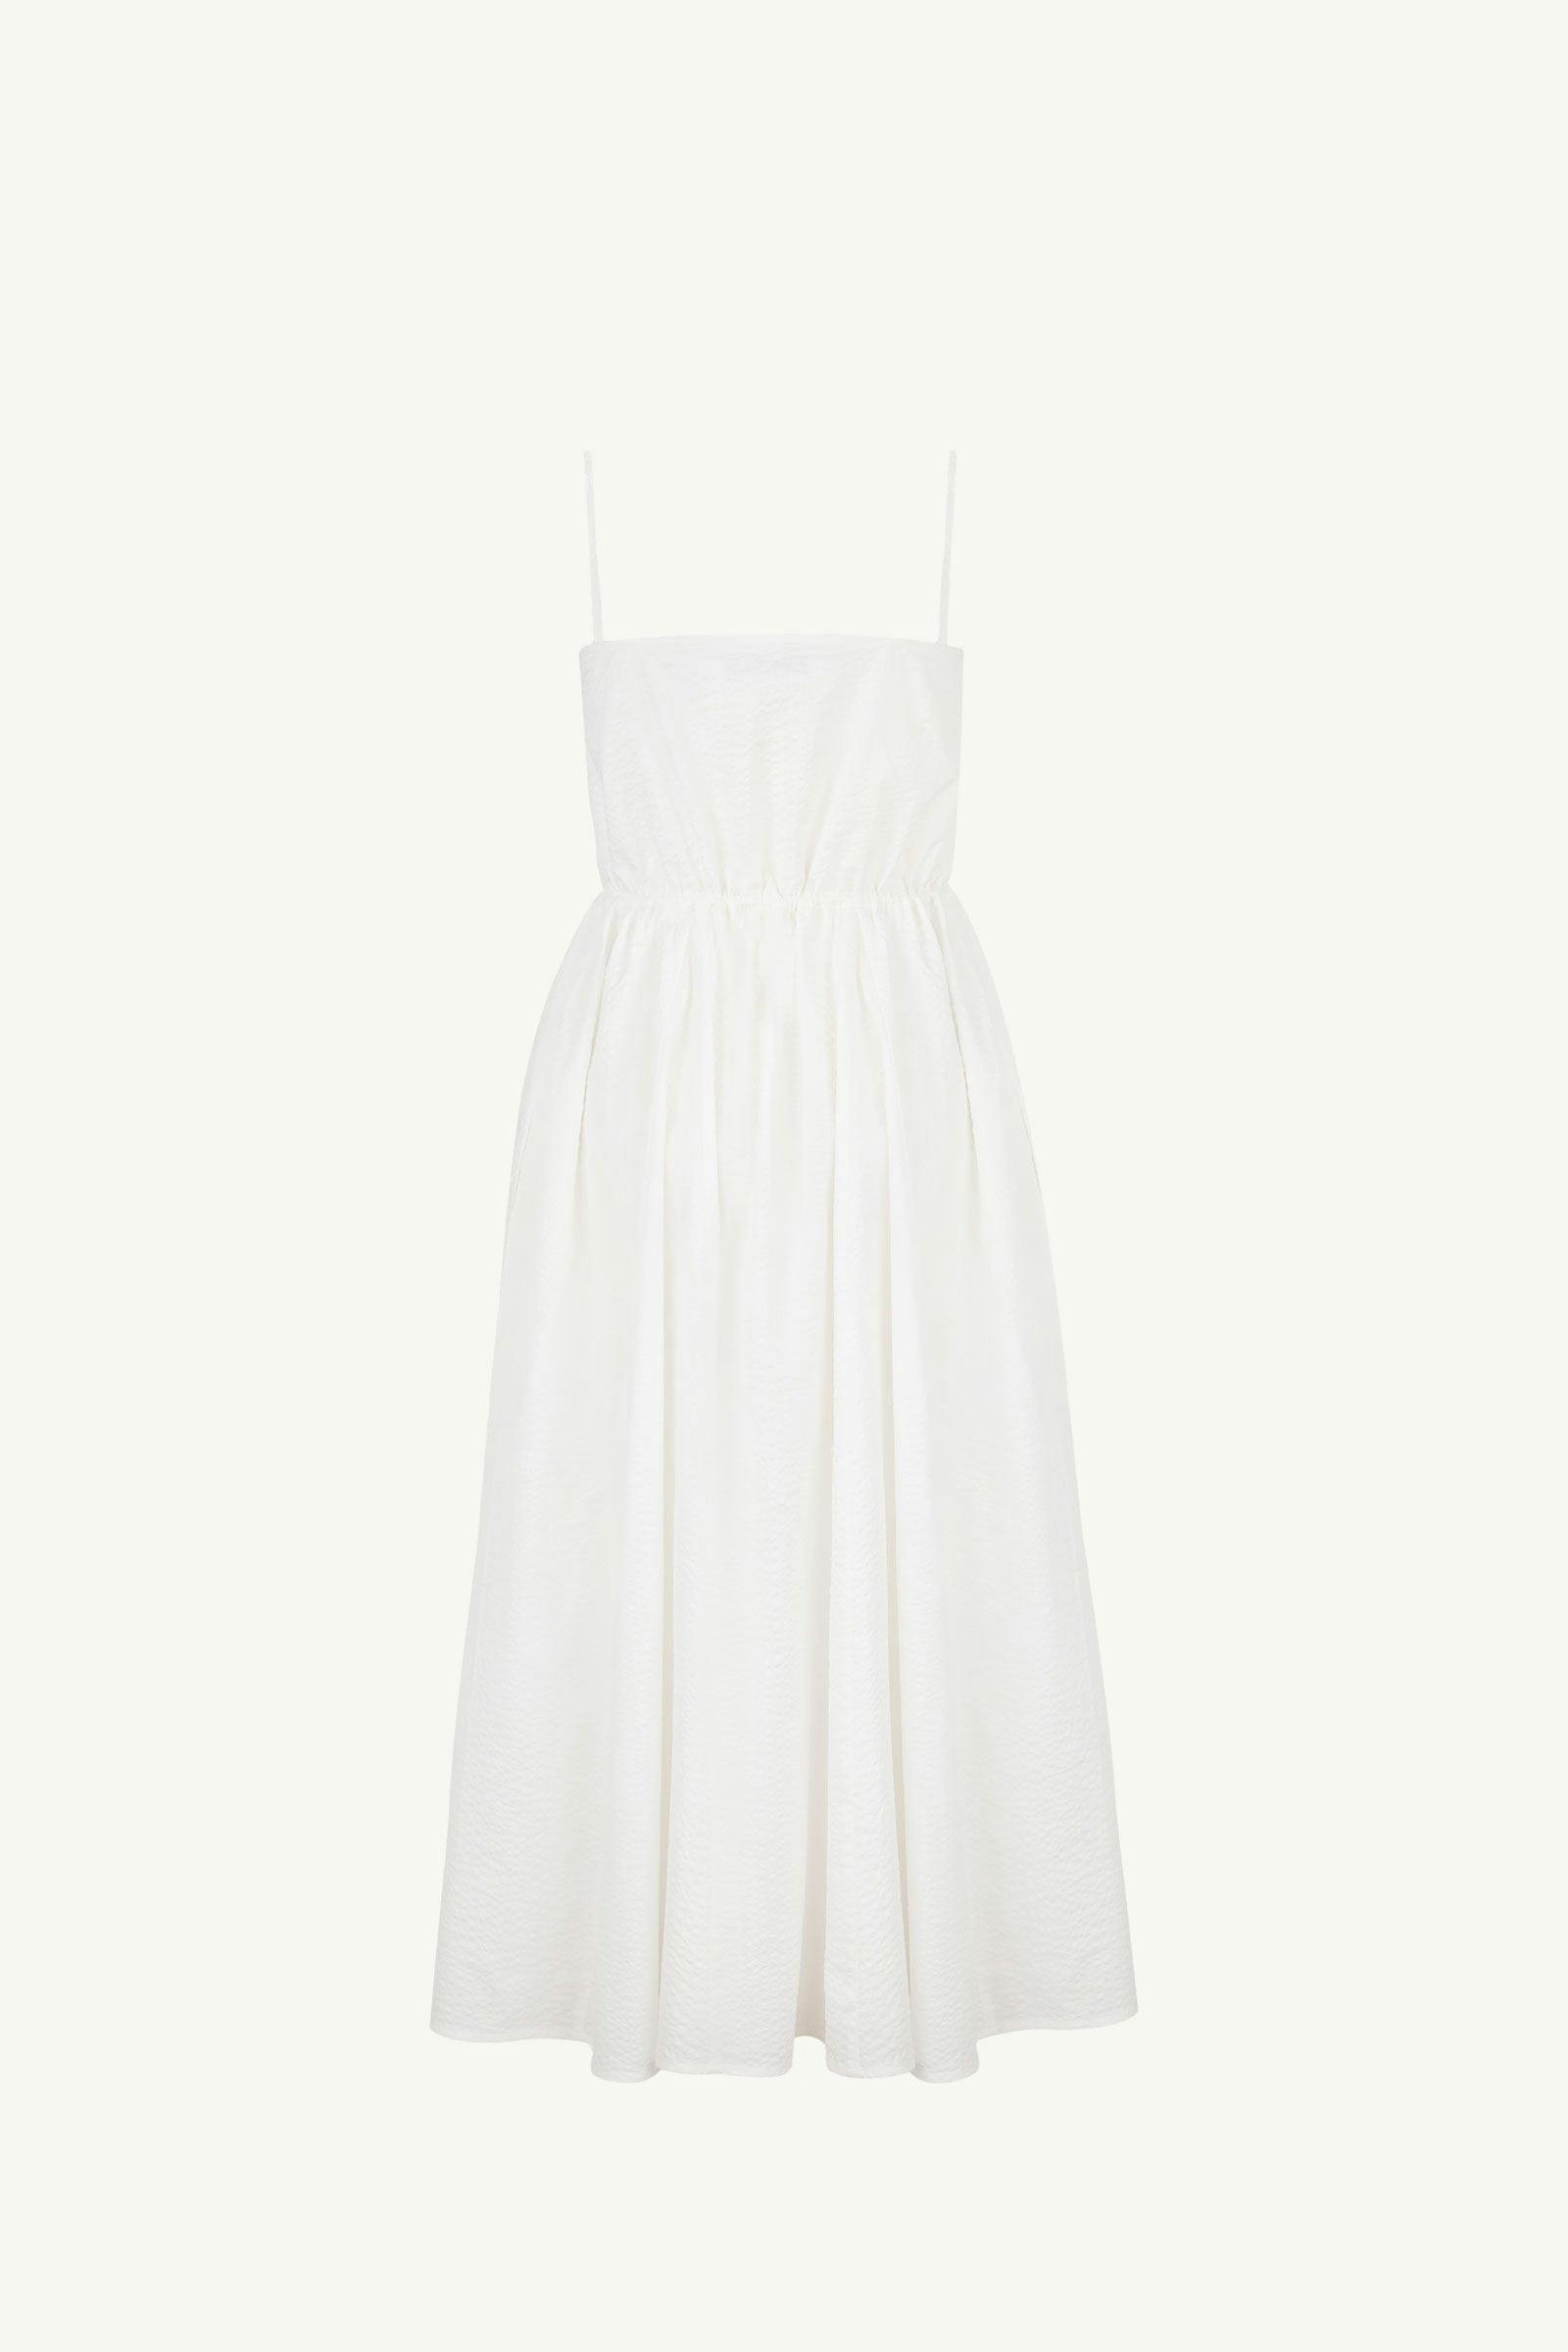 Bistro Dress | V-Neck Flare Dress | White Colour | 100% Cotton ...